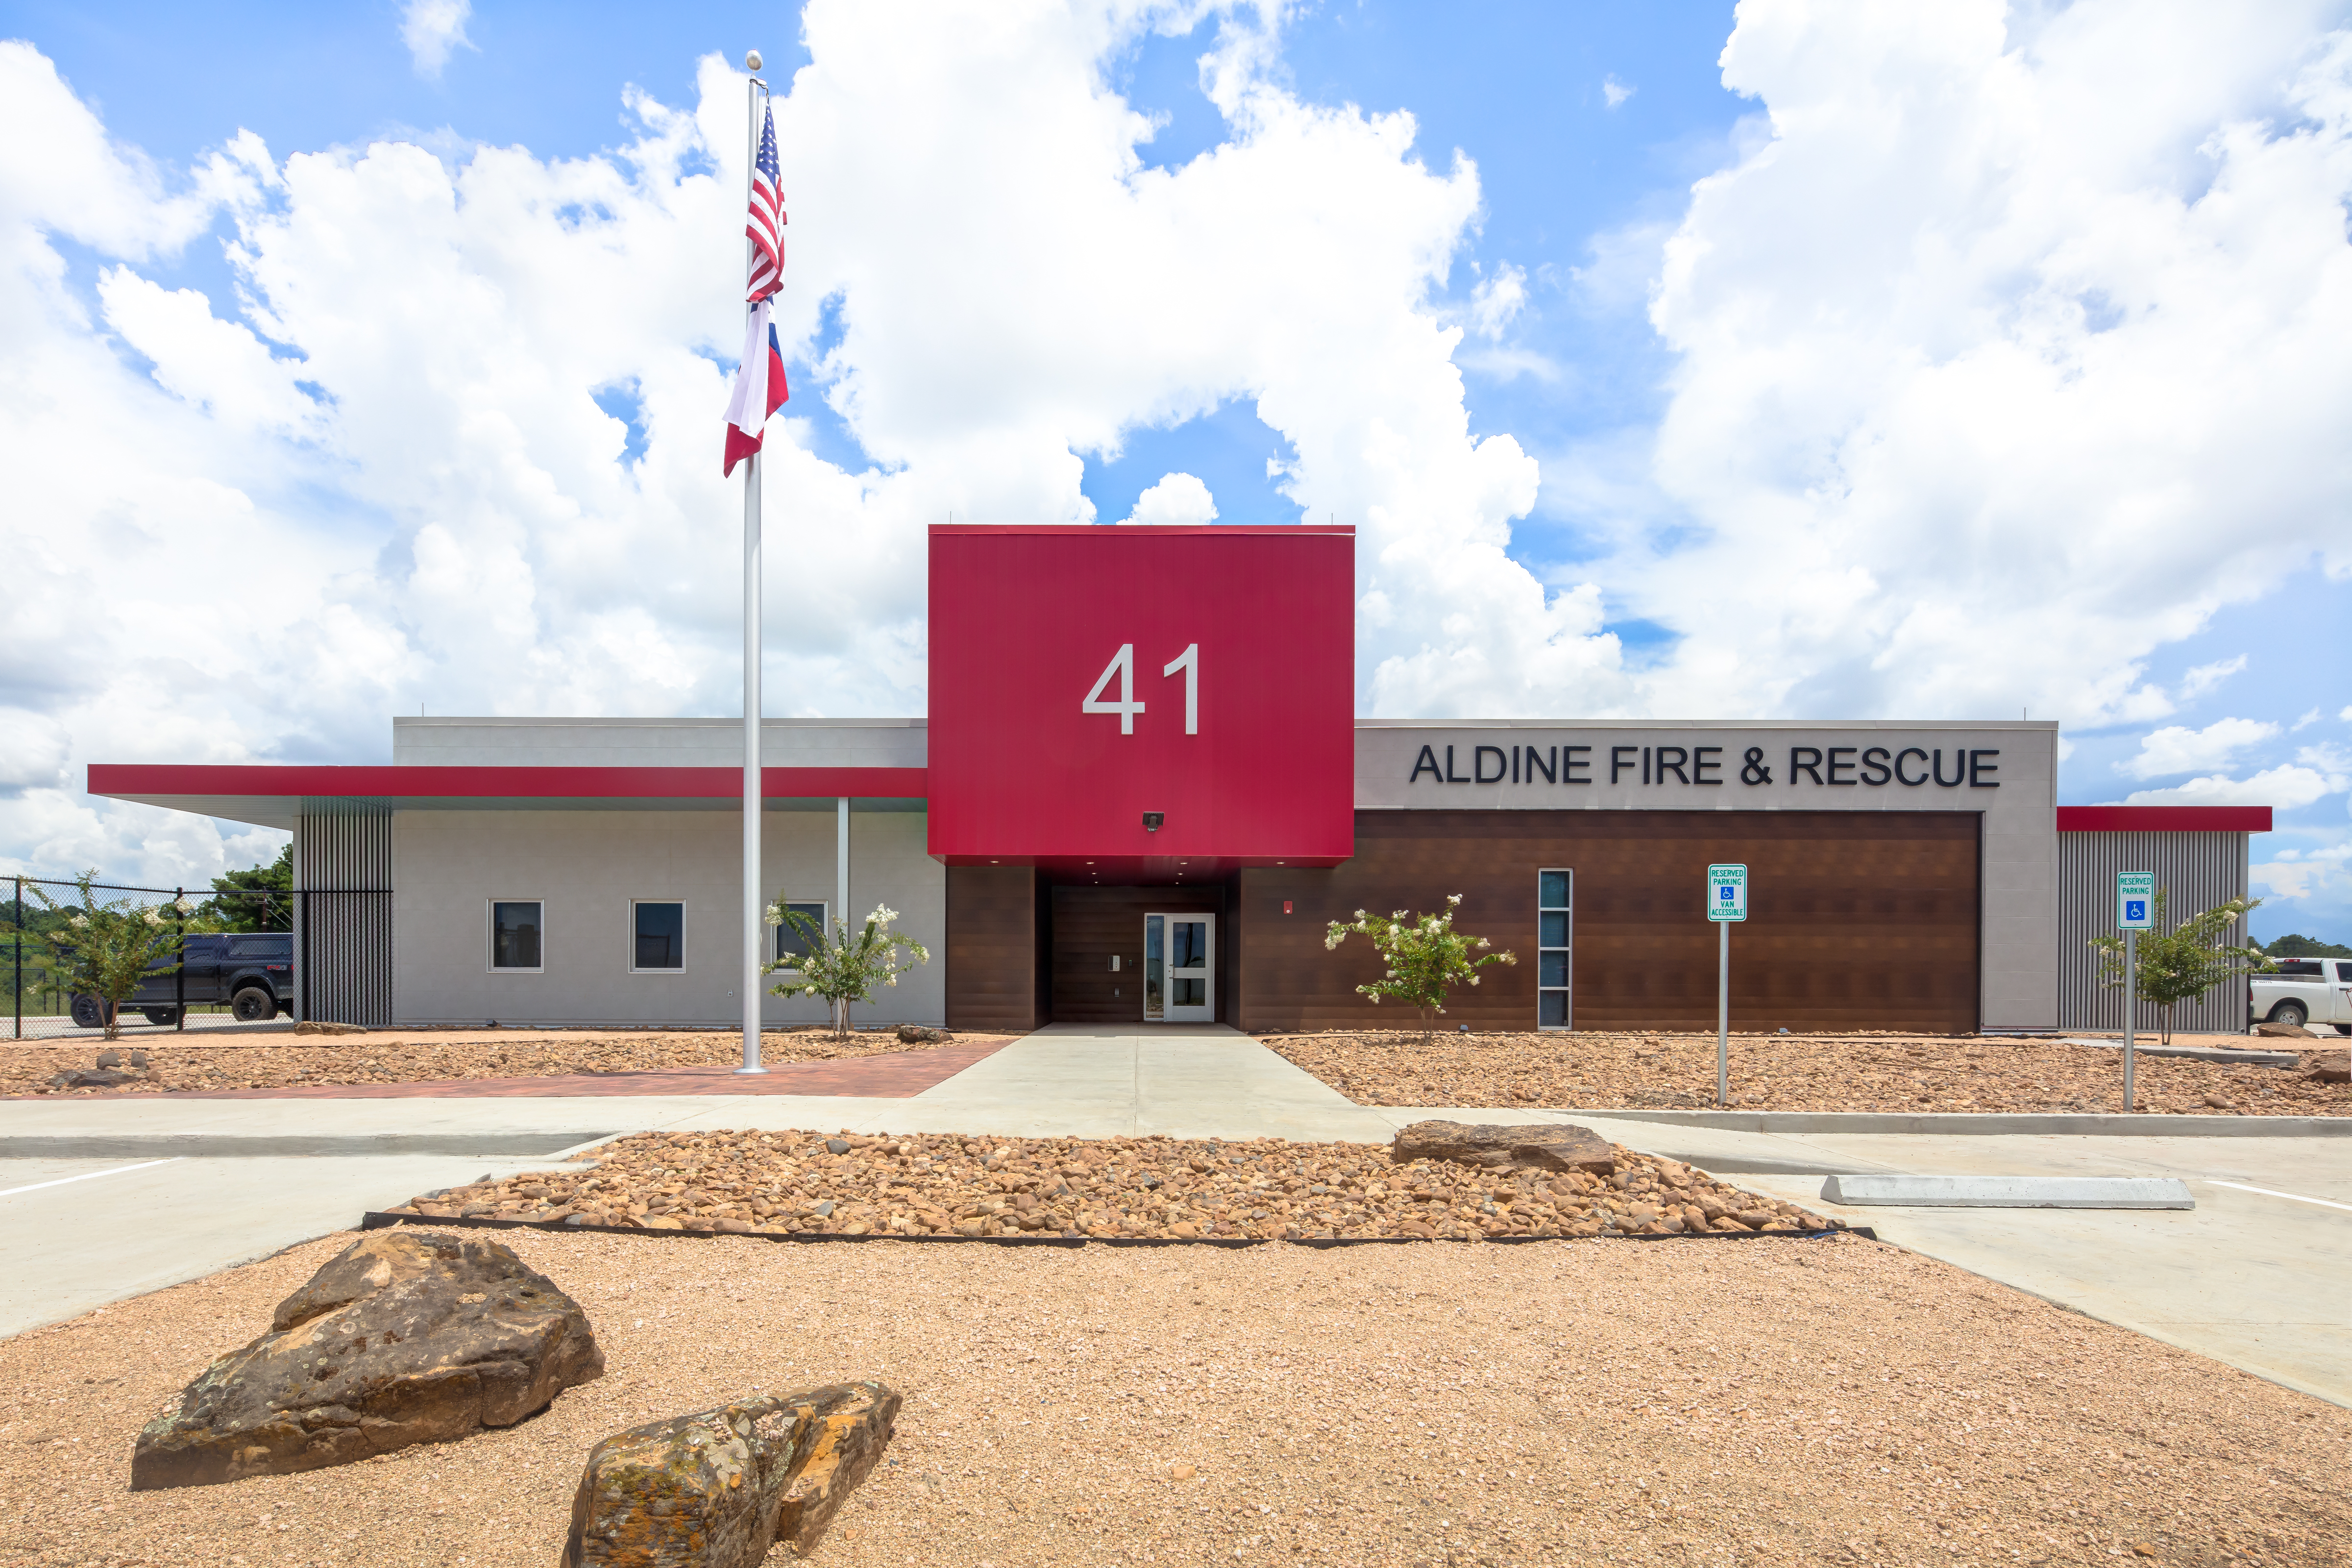 Aldine Fire & Rescue Station #41